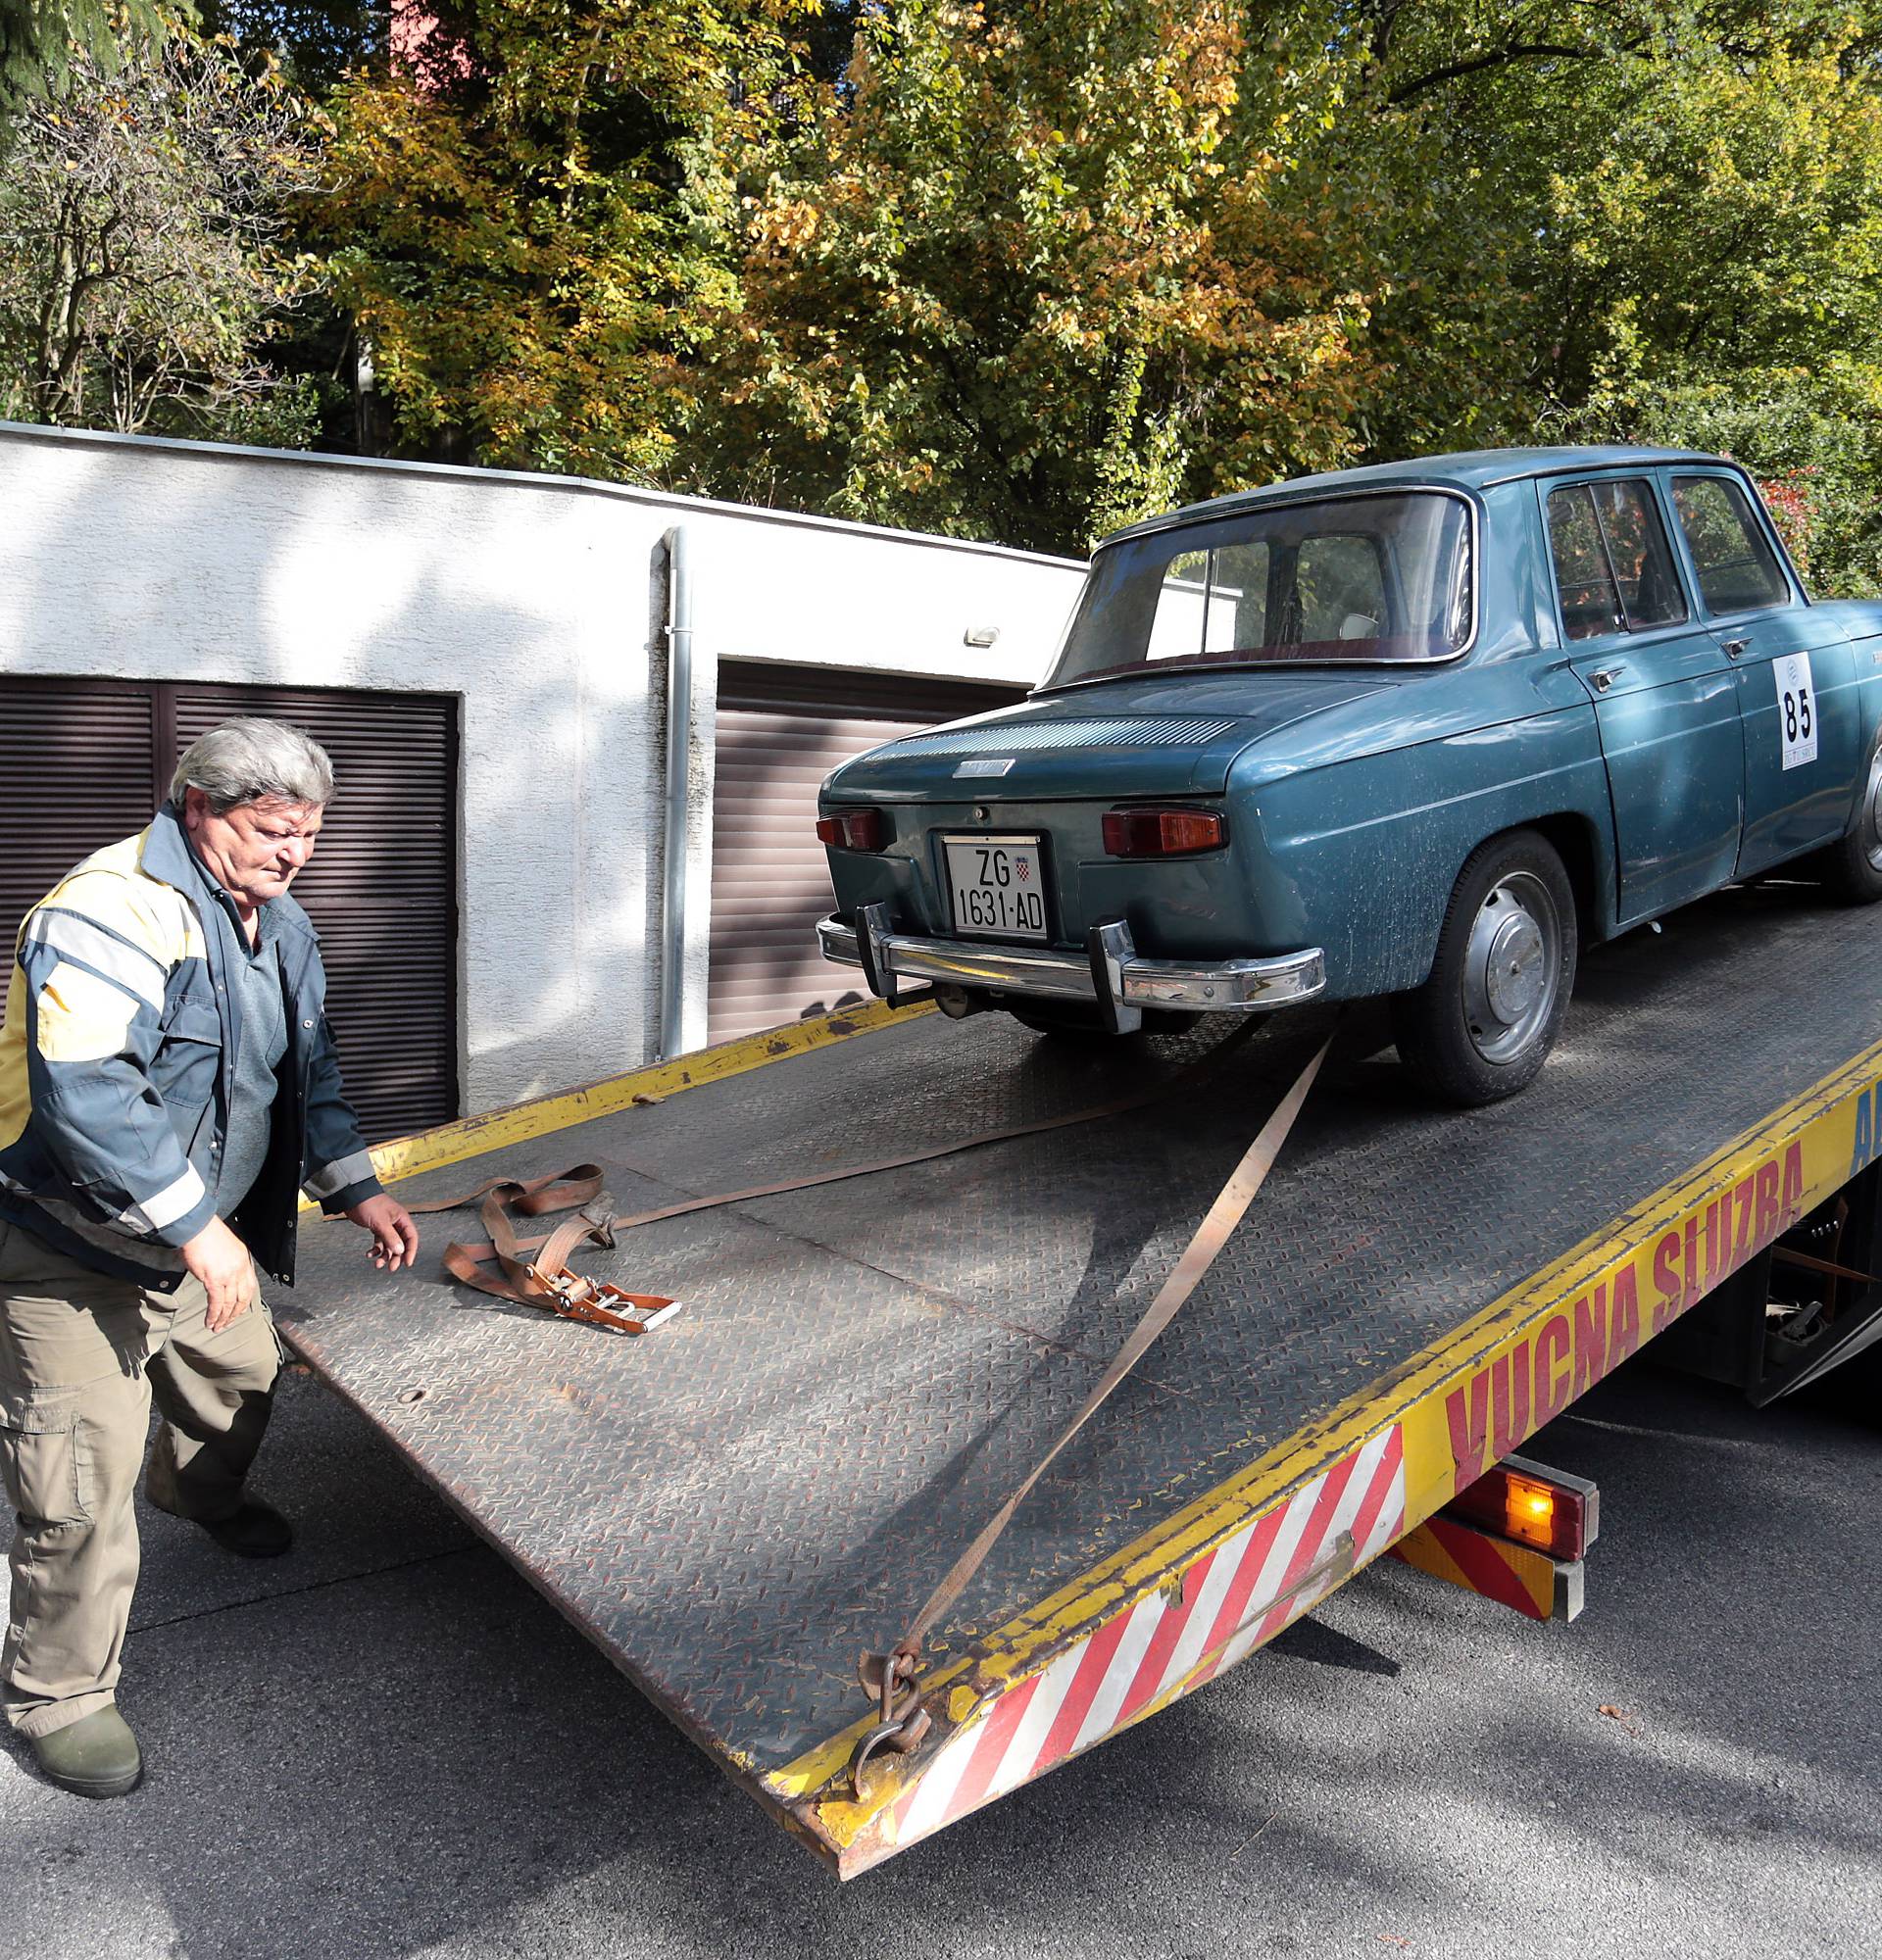 Pred gašenjem: Blokirali muzej u kojem je i Ćaćin stari Renault